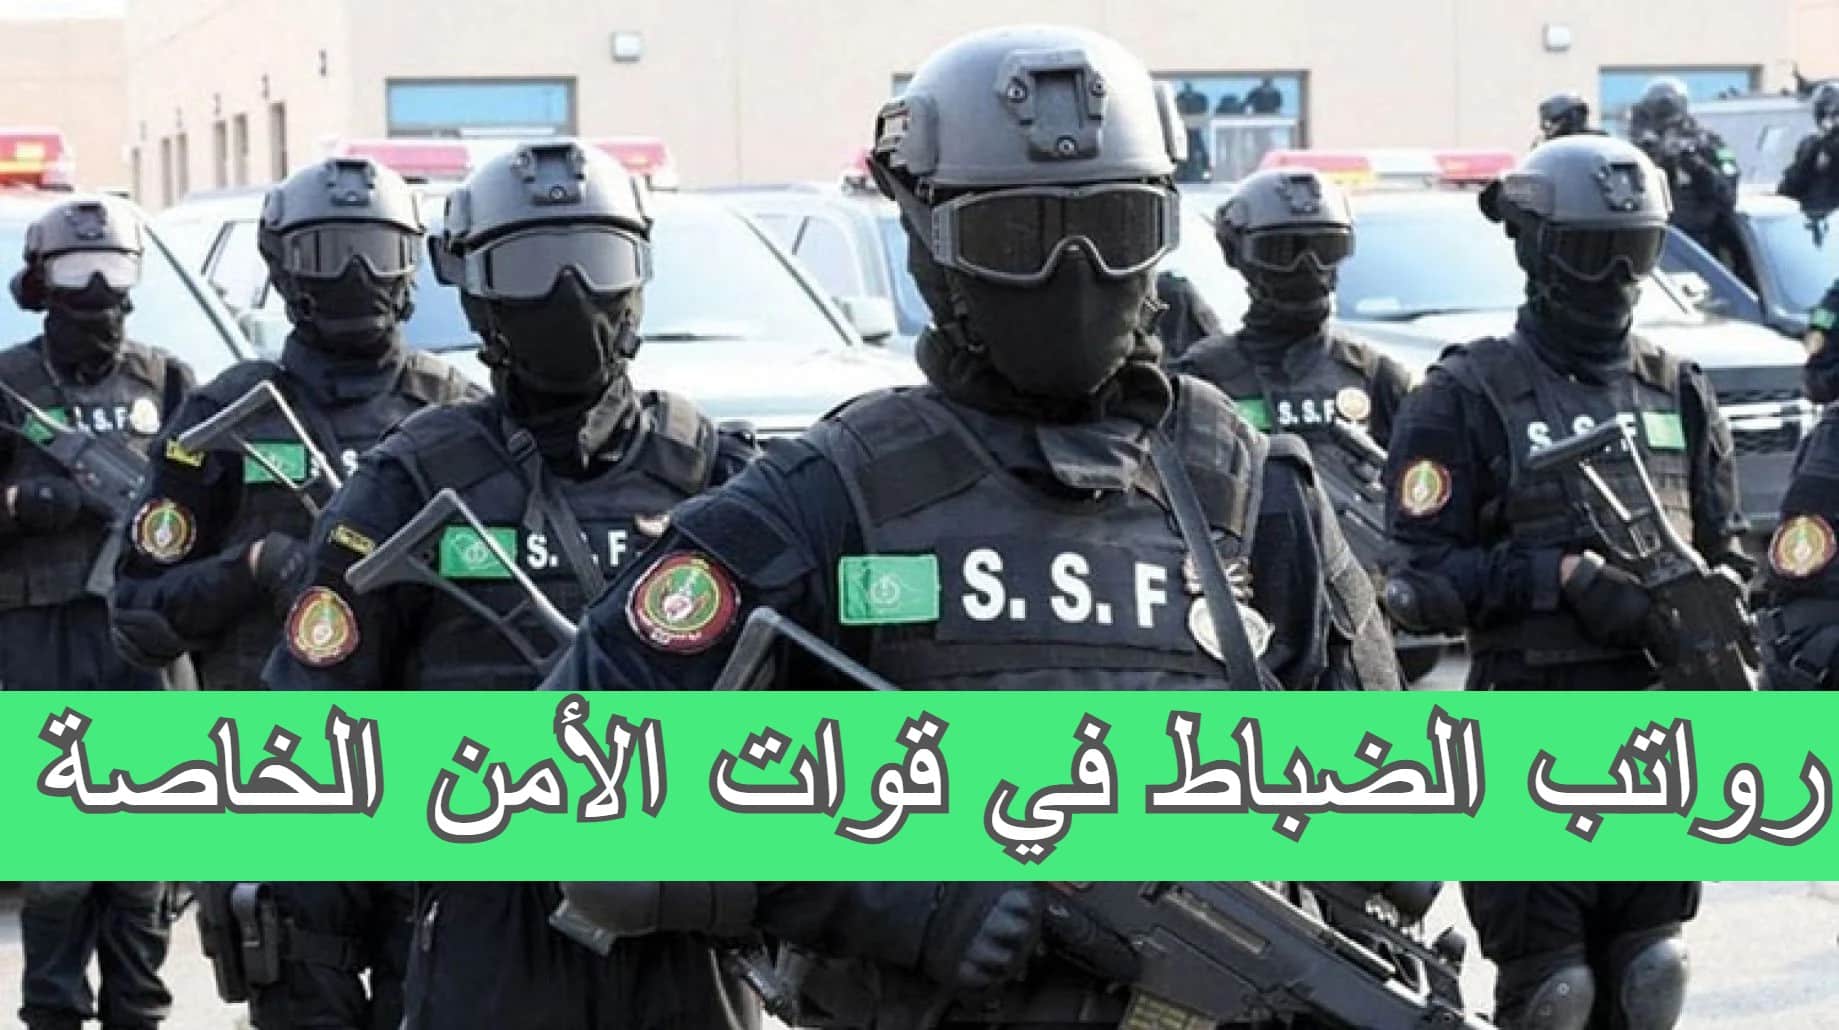 سلم رواتب الضباط في قوات الأمن الخاصة السعودية مع البدلات التي تبدأ من 1000 ريال